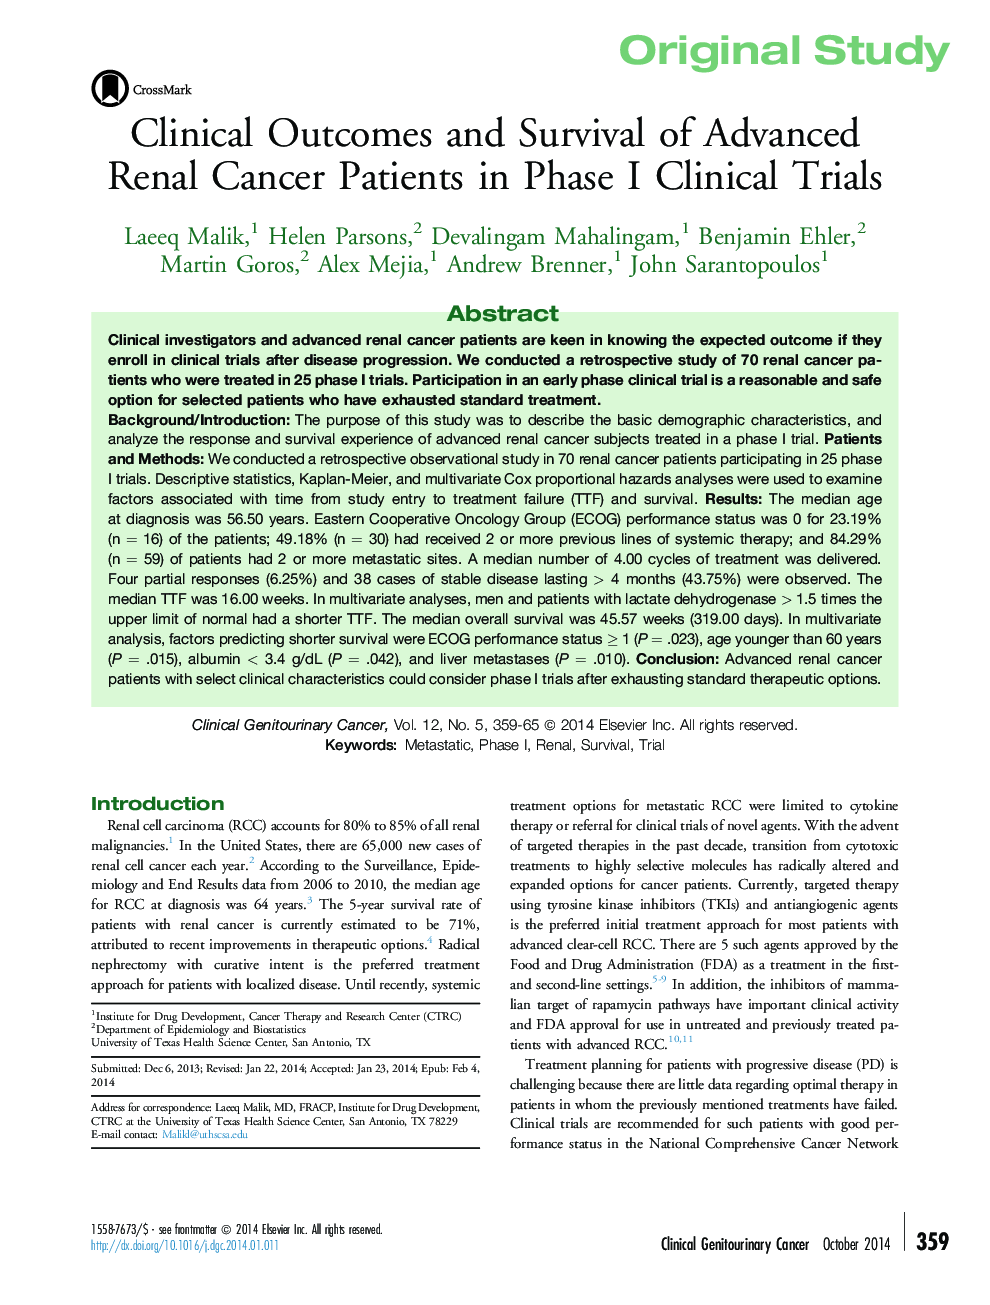 نتایج بالینی و بقاء بیماران مبتلا به سرطان پیشرفته کلیه در آزمایشات بالینی فاز اول 